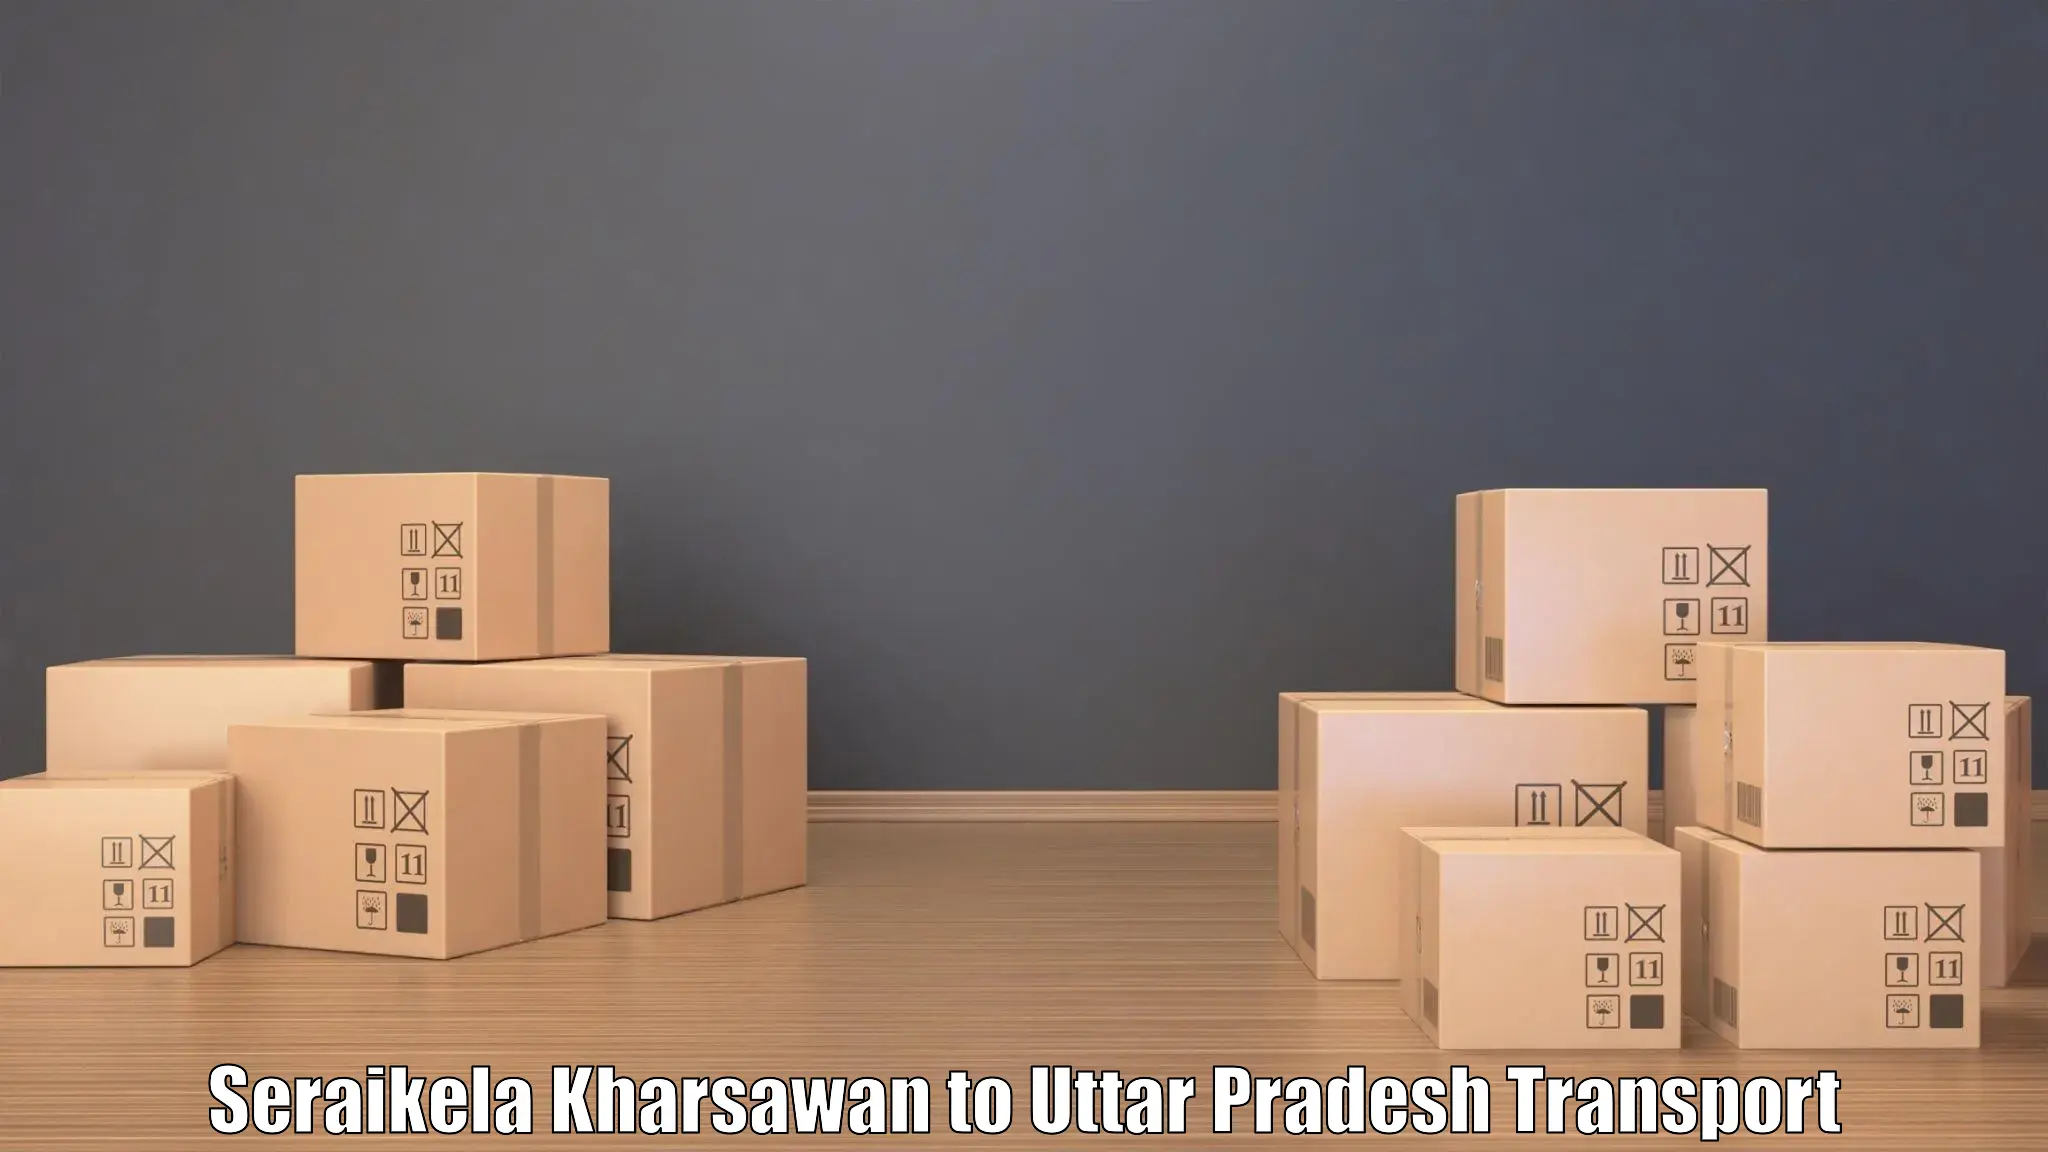 Bike transport service Seraikela Kharsawan to Uttar Pradesh